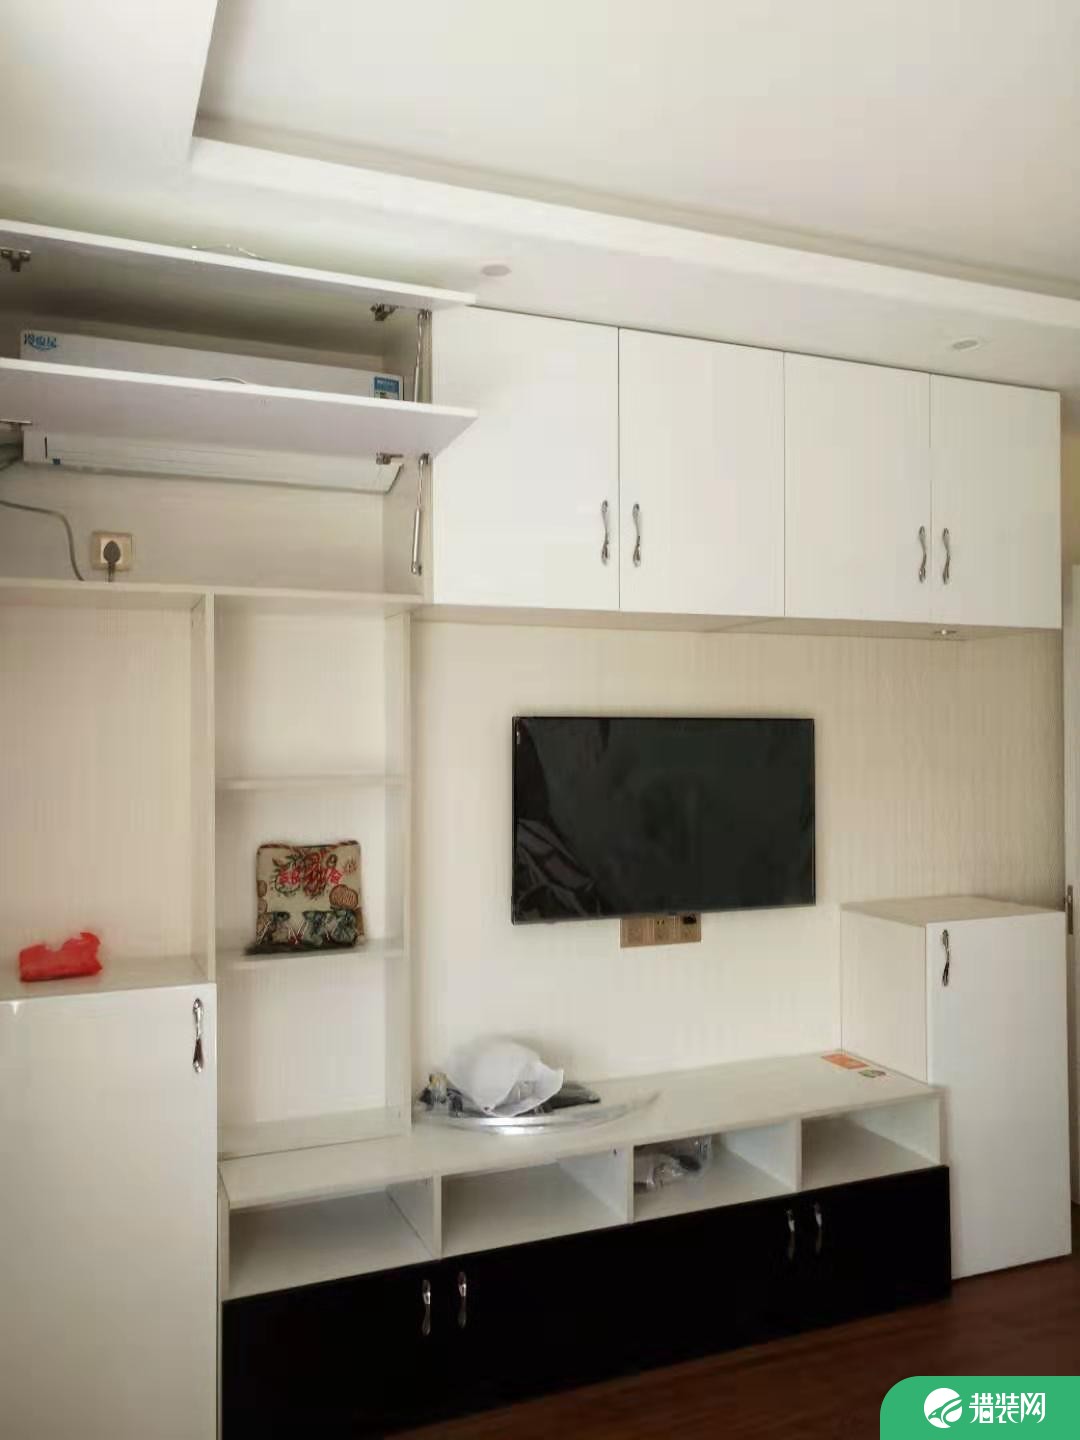 无锡现代舒适三居室公寓装修效果图展示